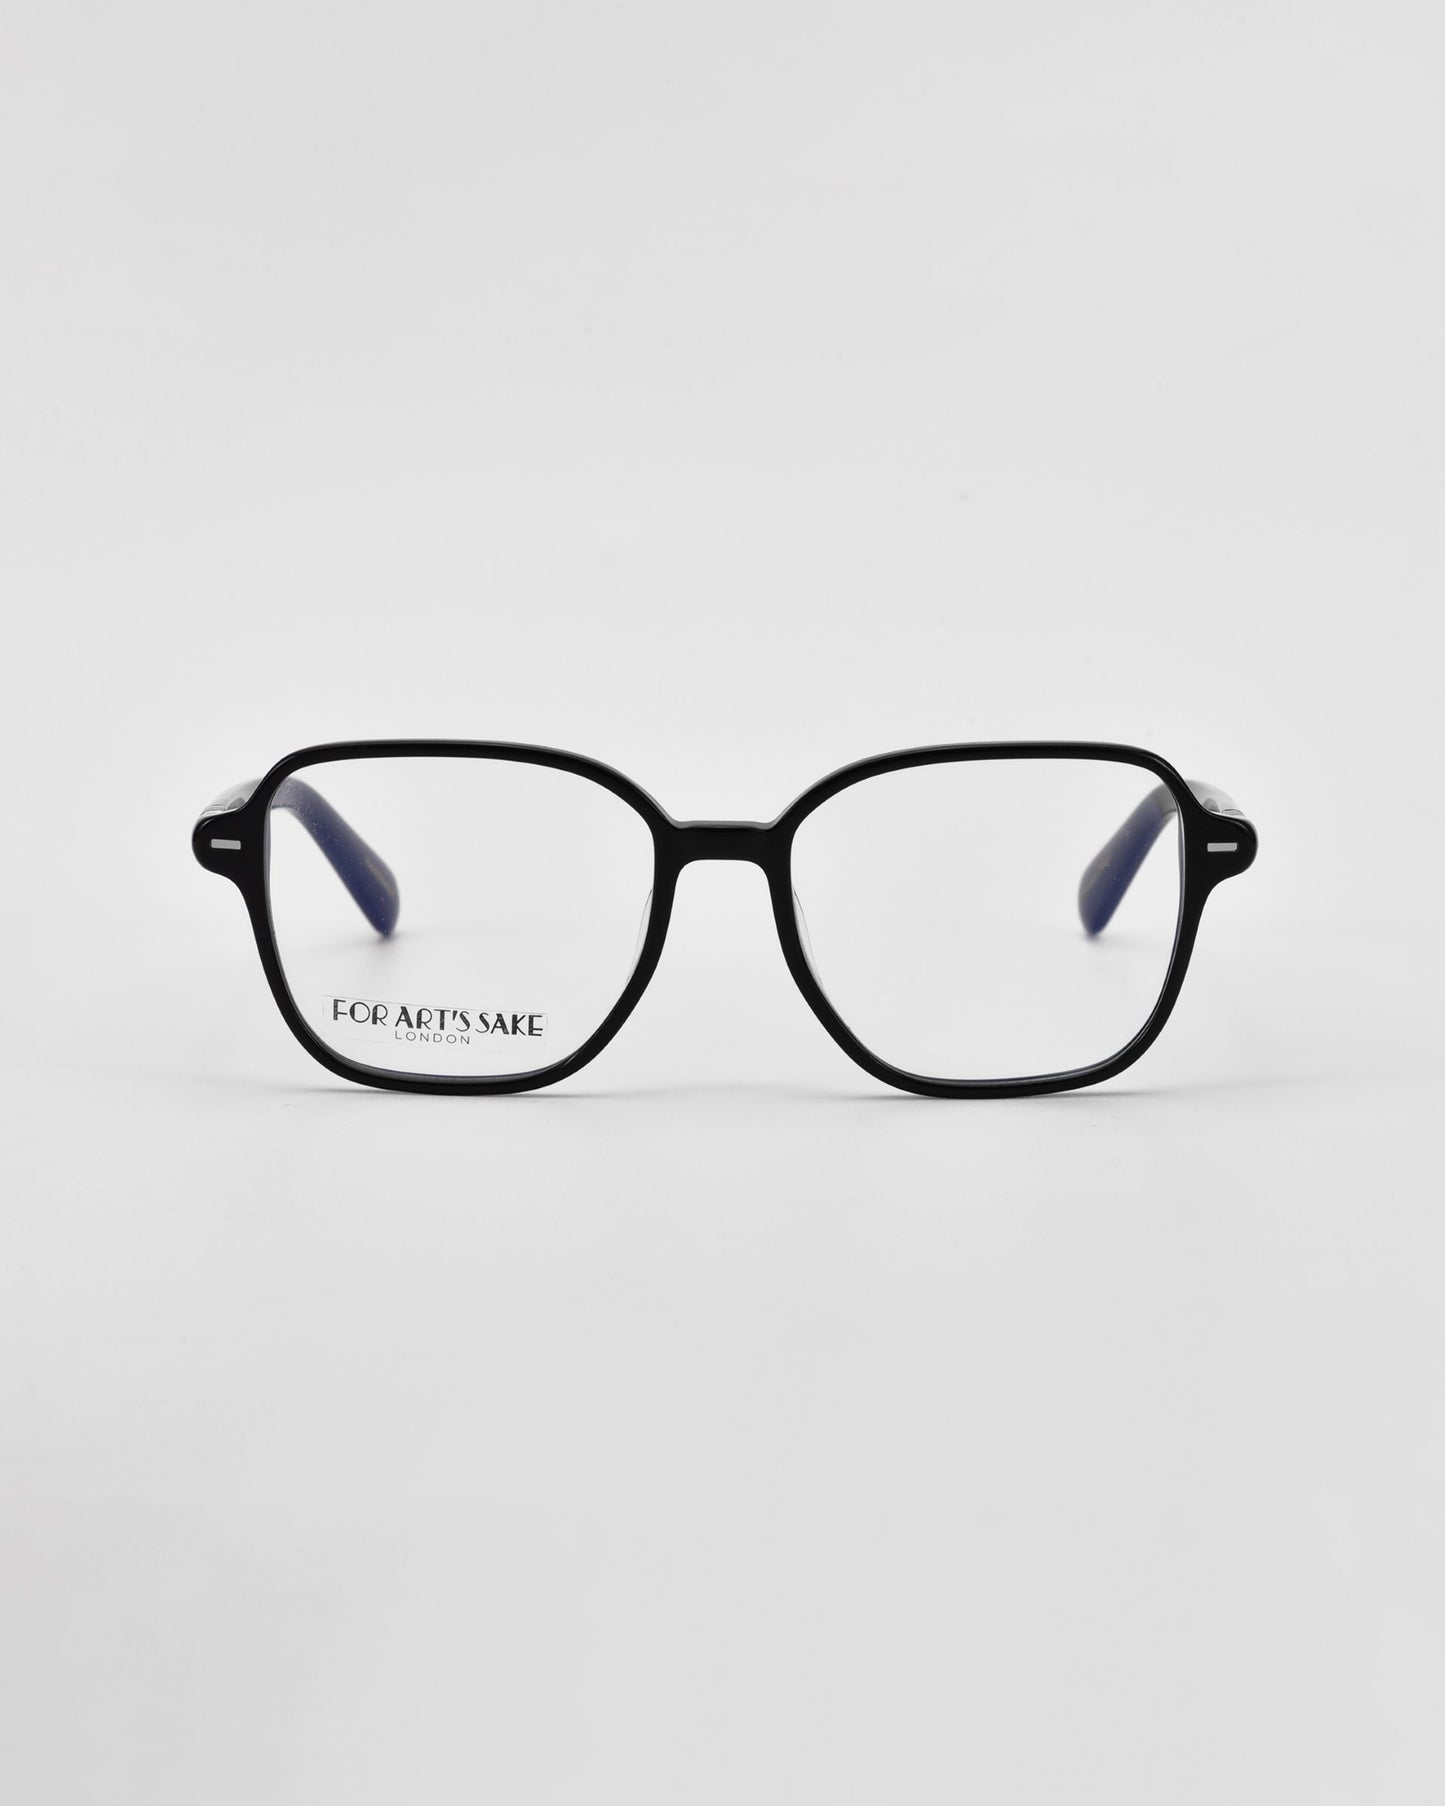 Black cat-eye framed optical glasses on a white background.